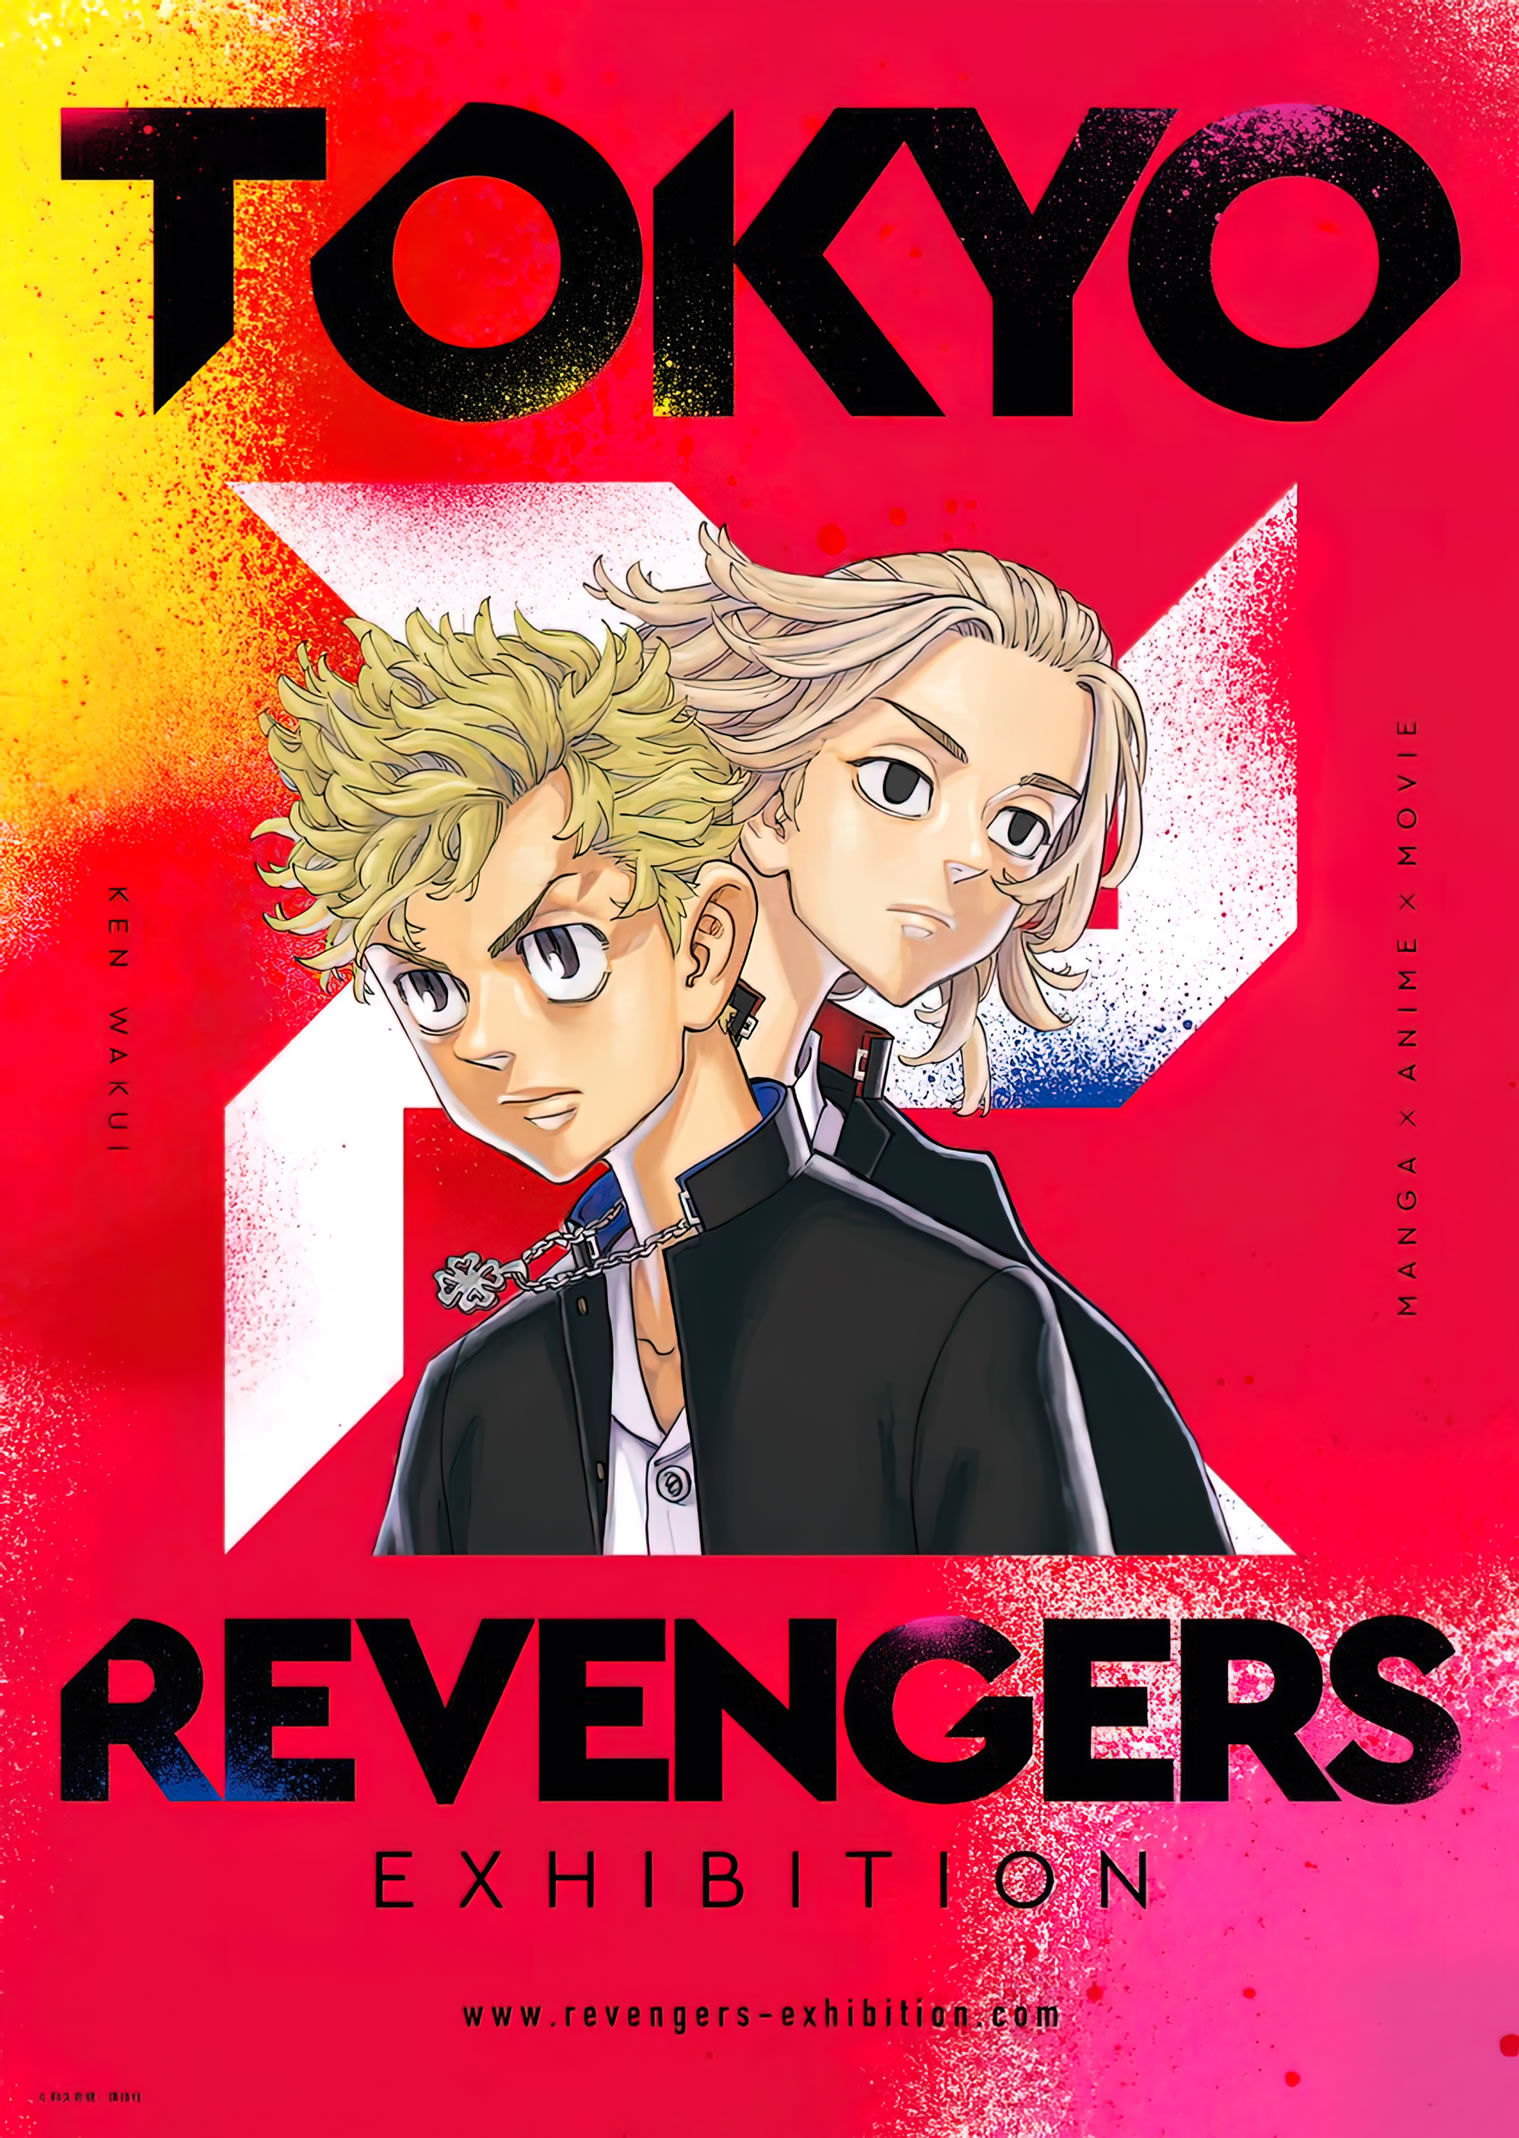 Tokyo Revengers alcanza nuevo hito en ventas antes de temp 2